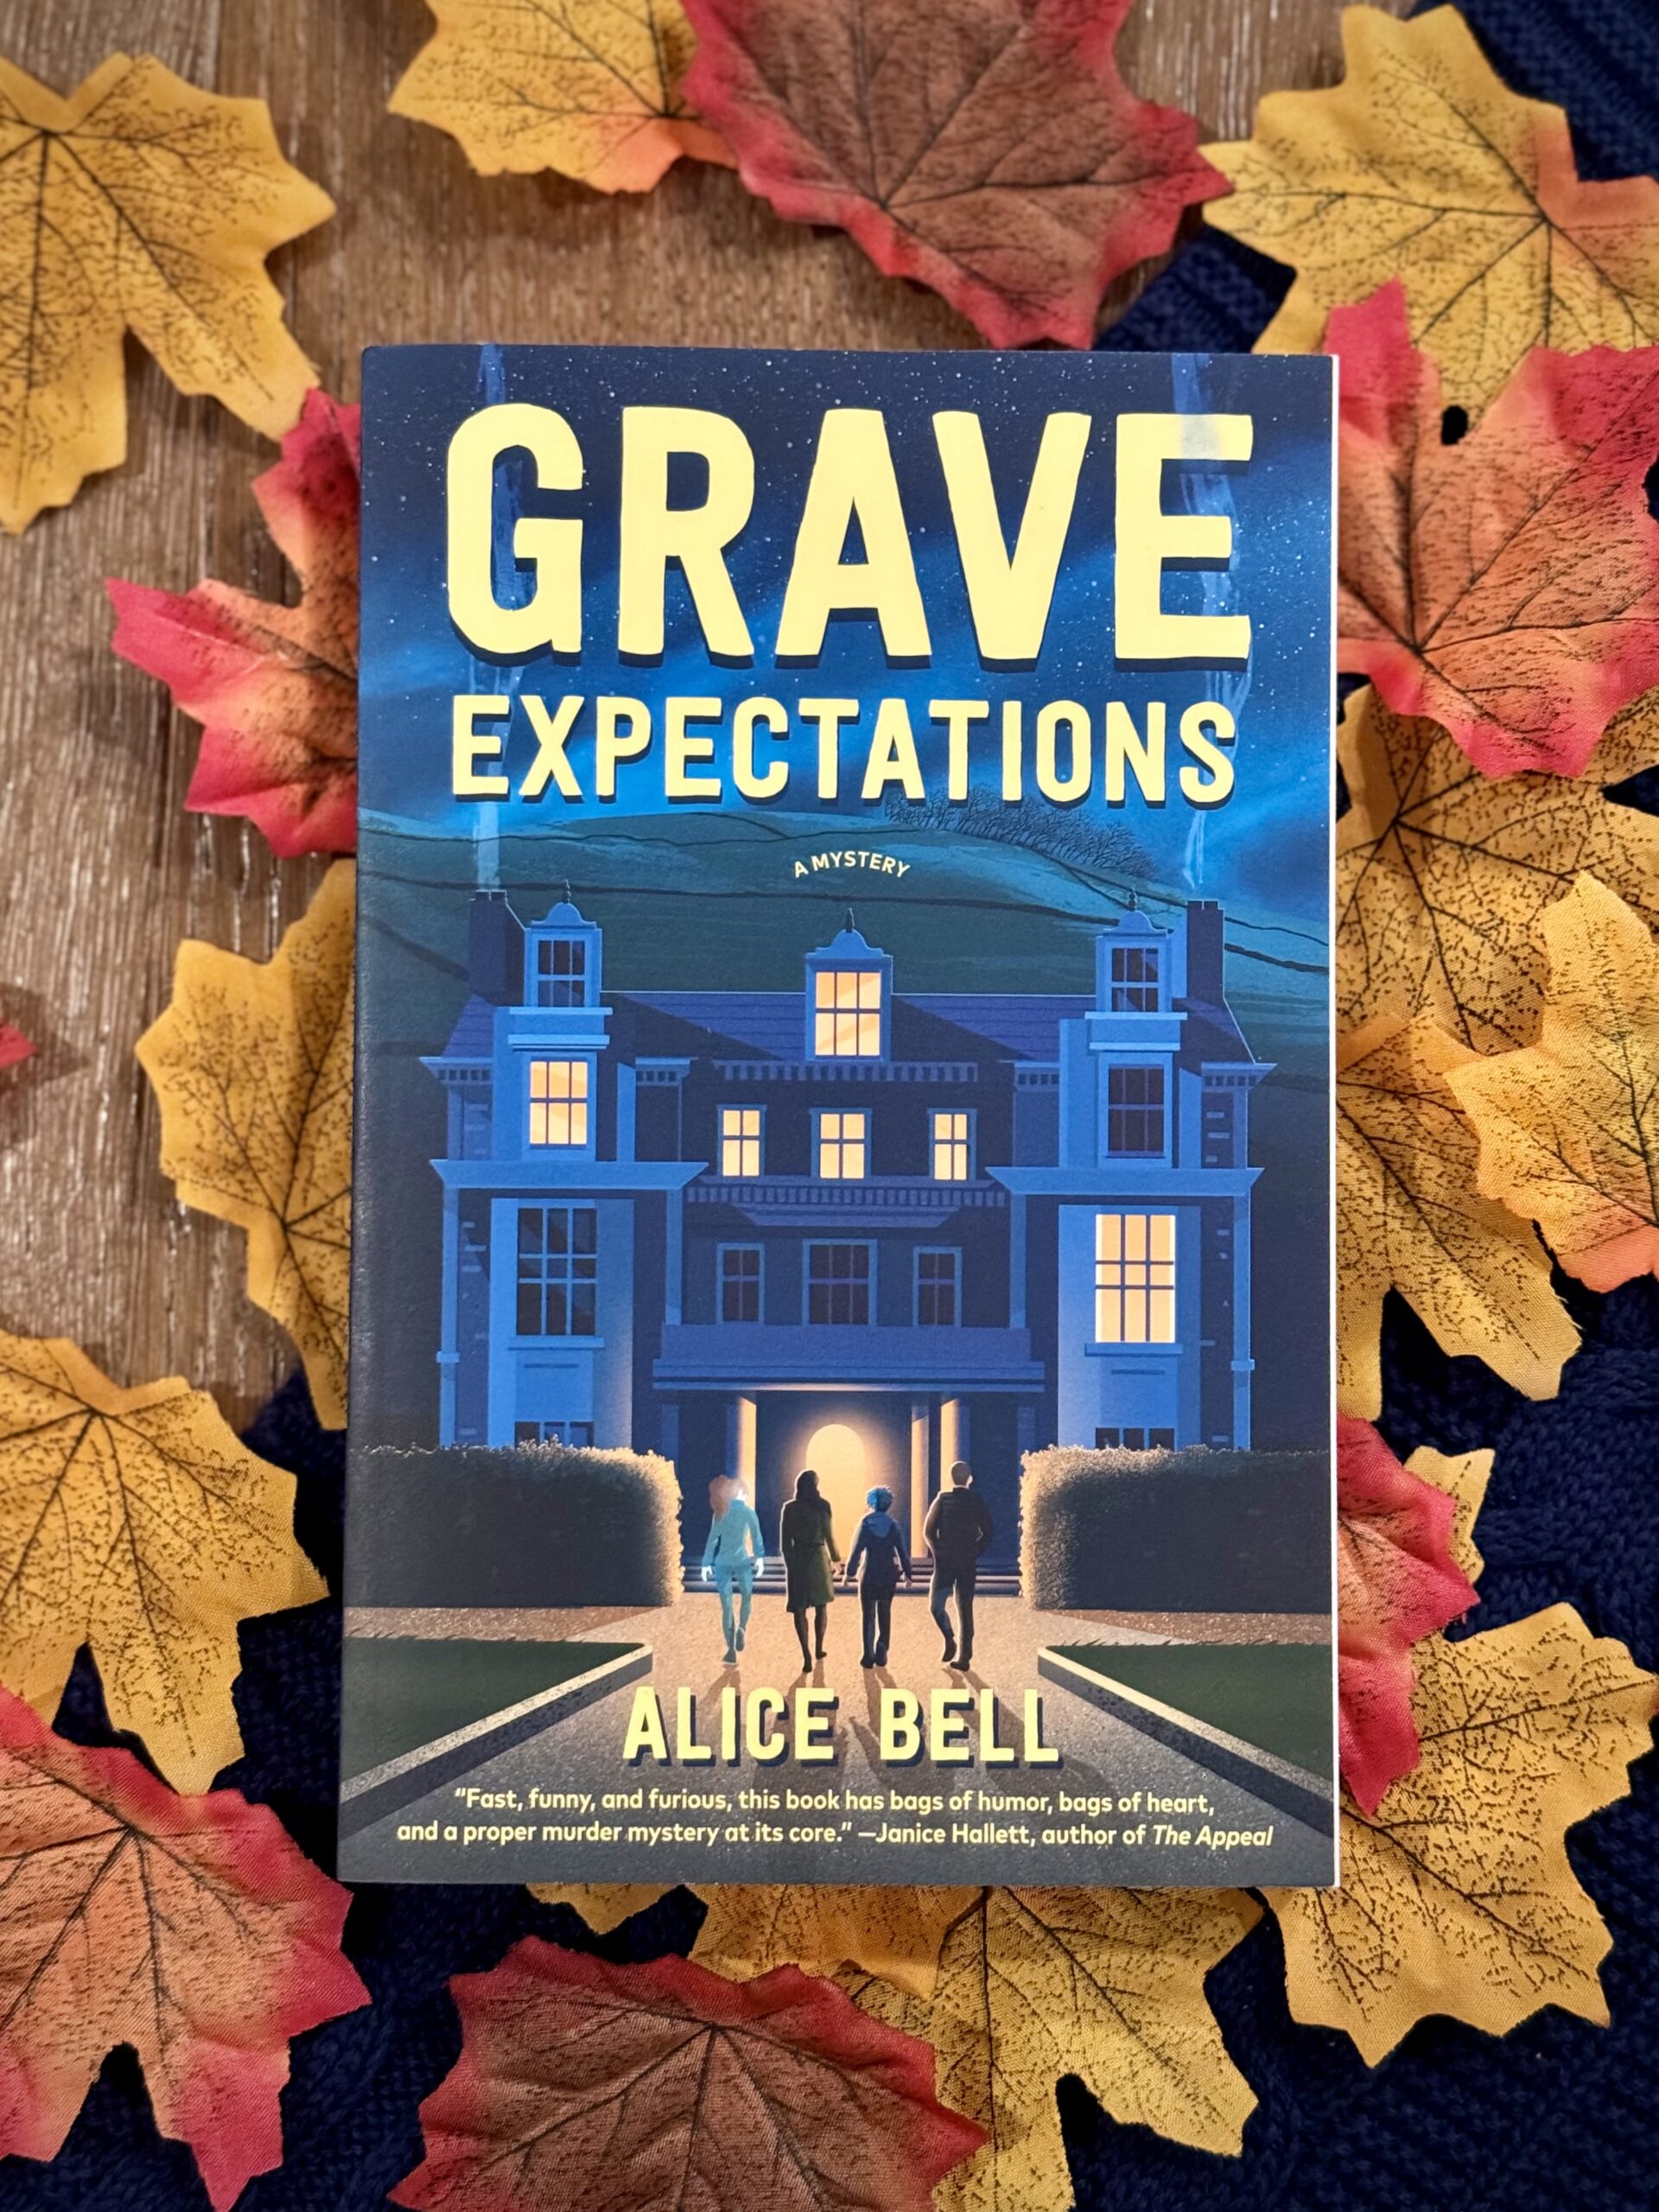 Grave Expectations: a spooky, cozy sensation